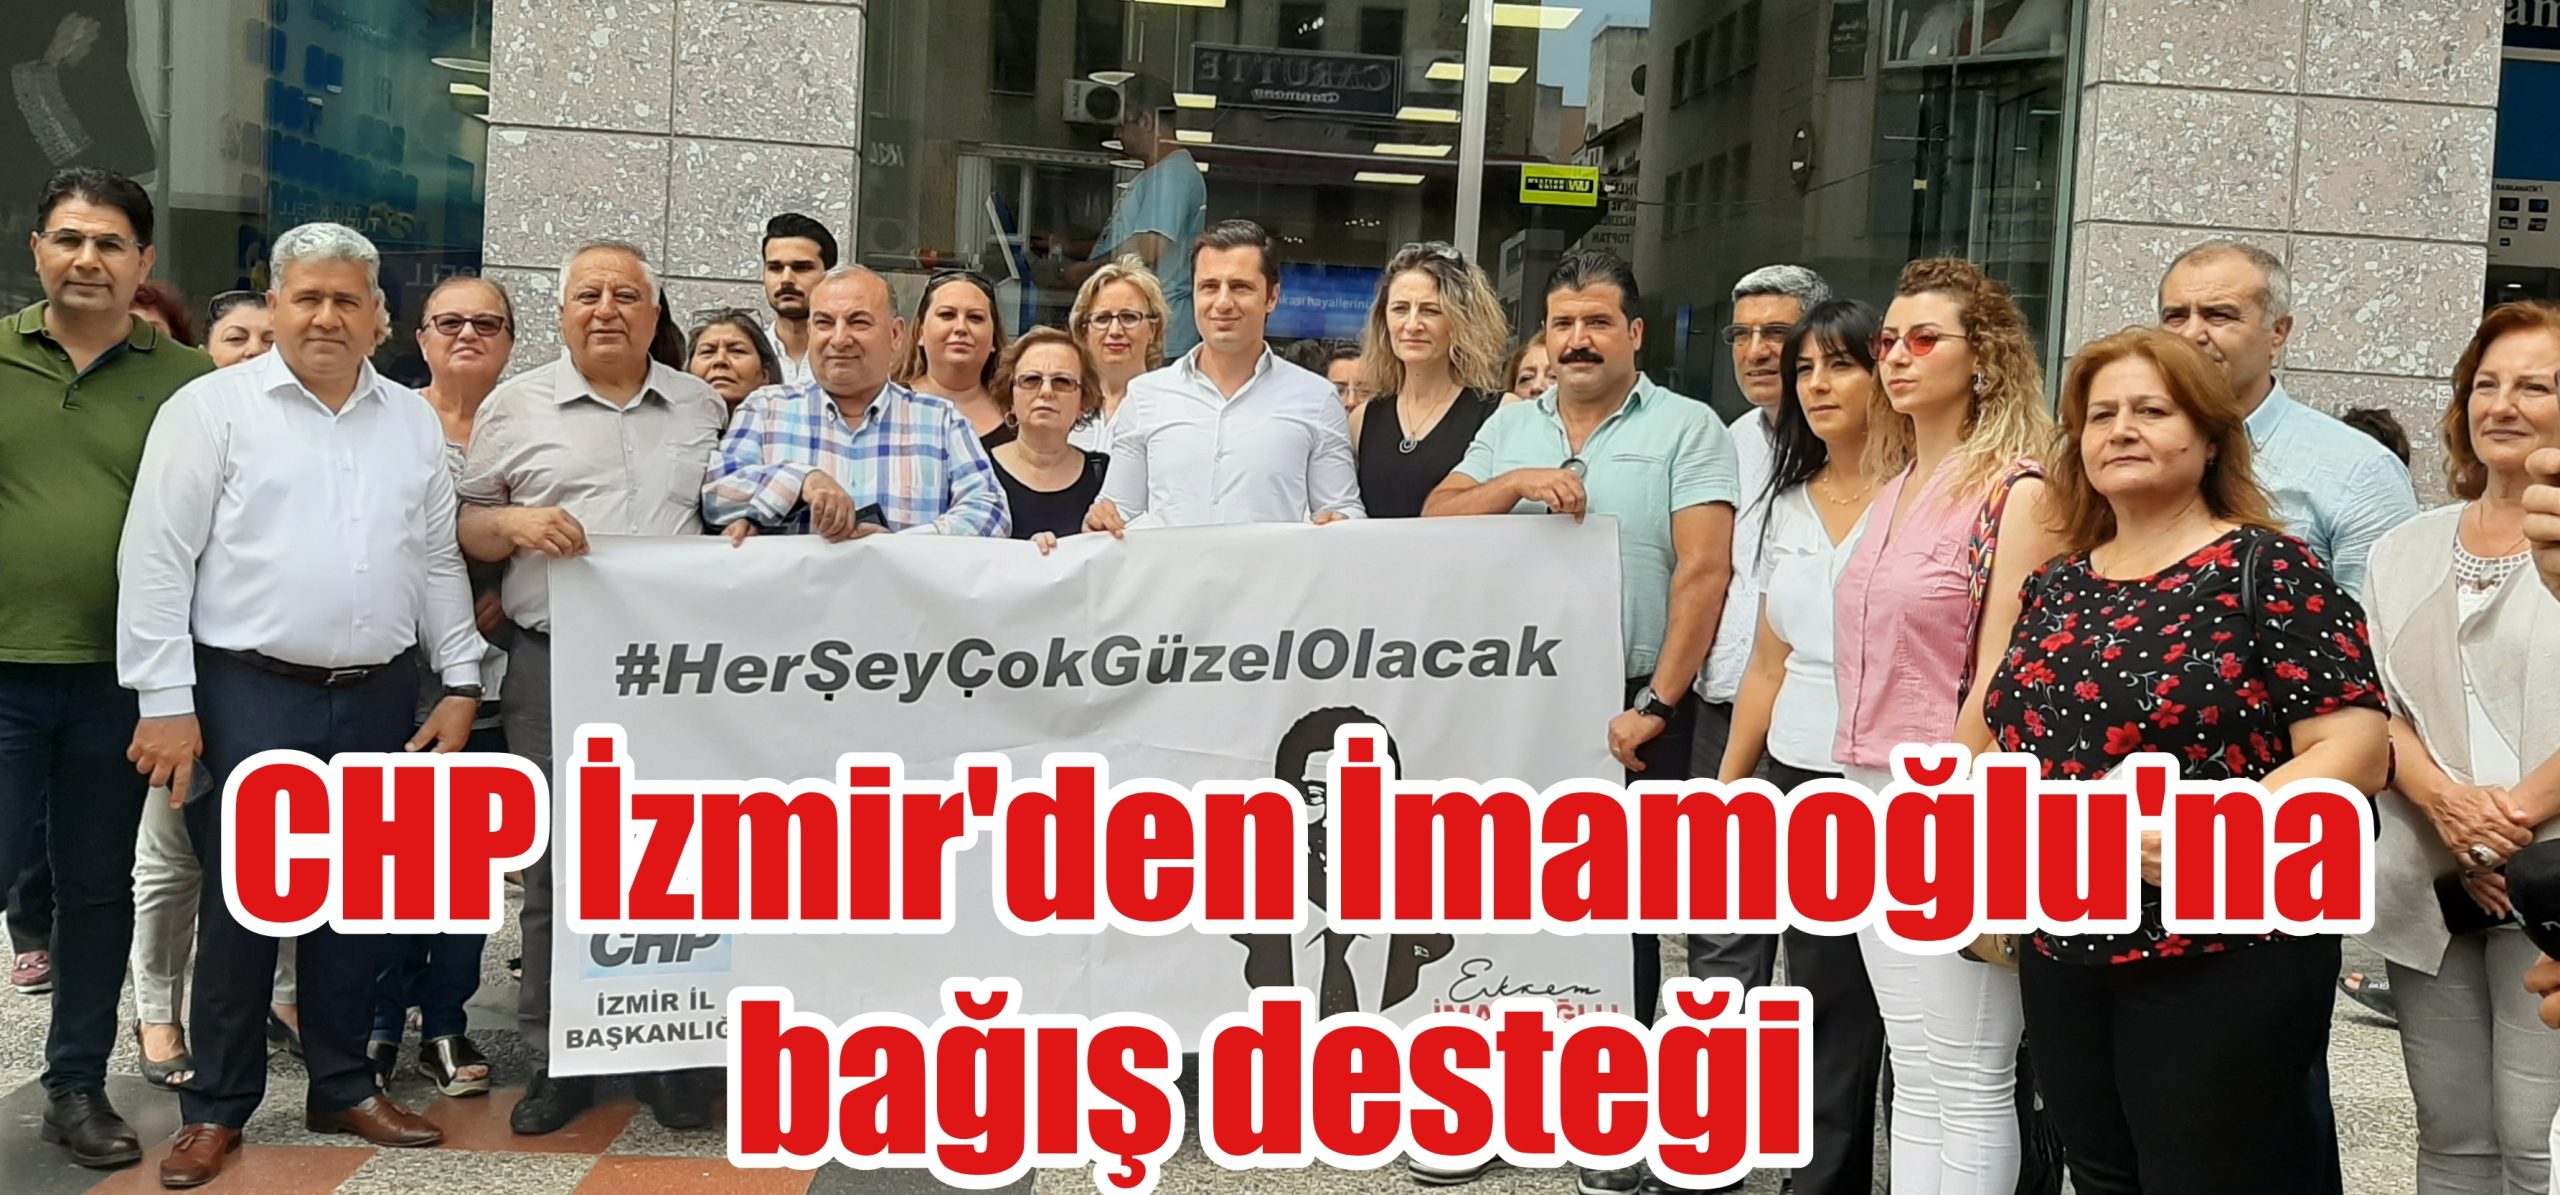 CHP İzmir’den İmamoğlu’na destek